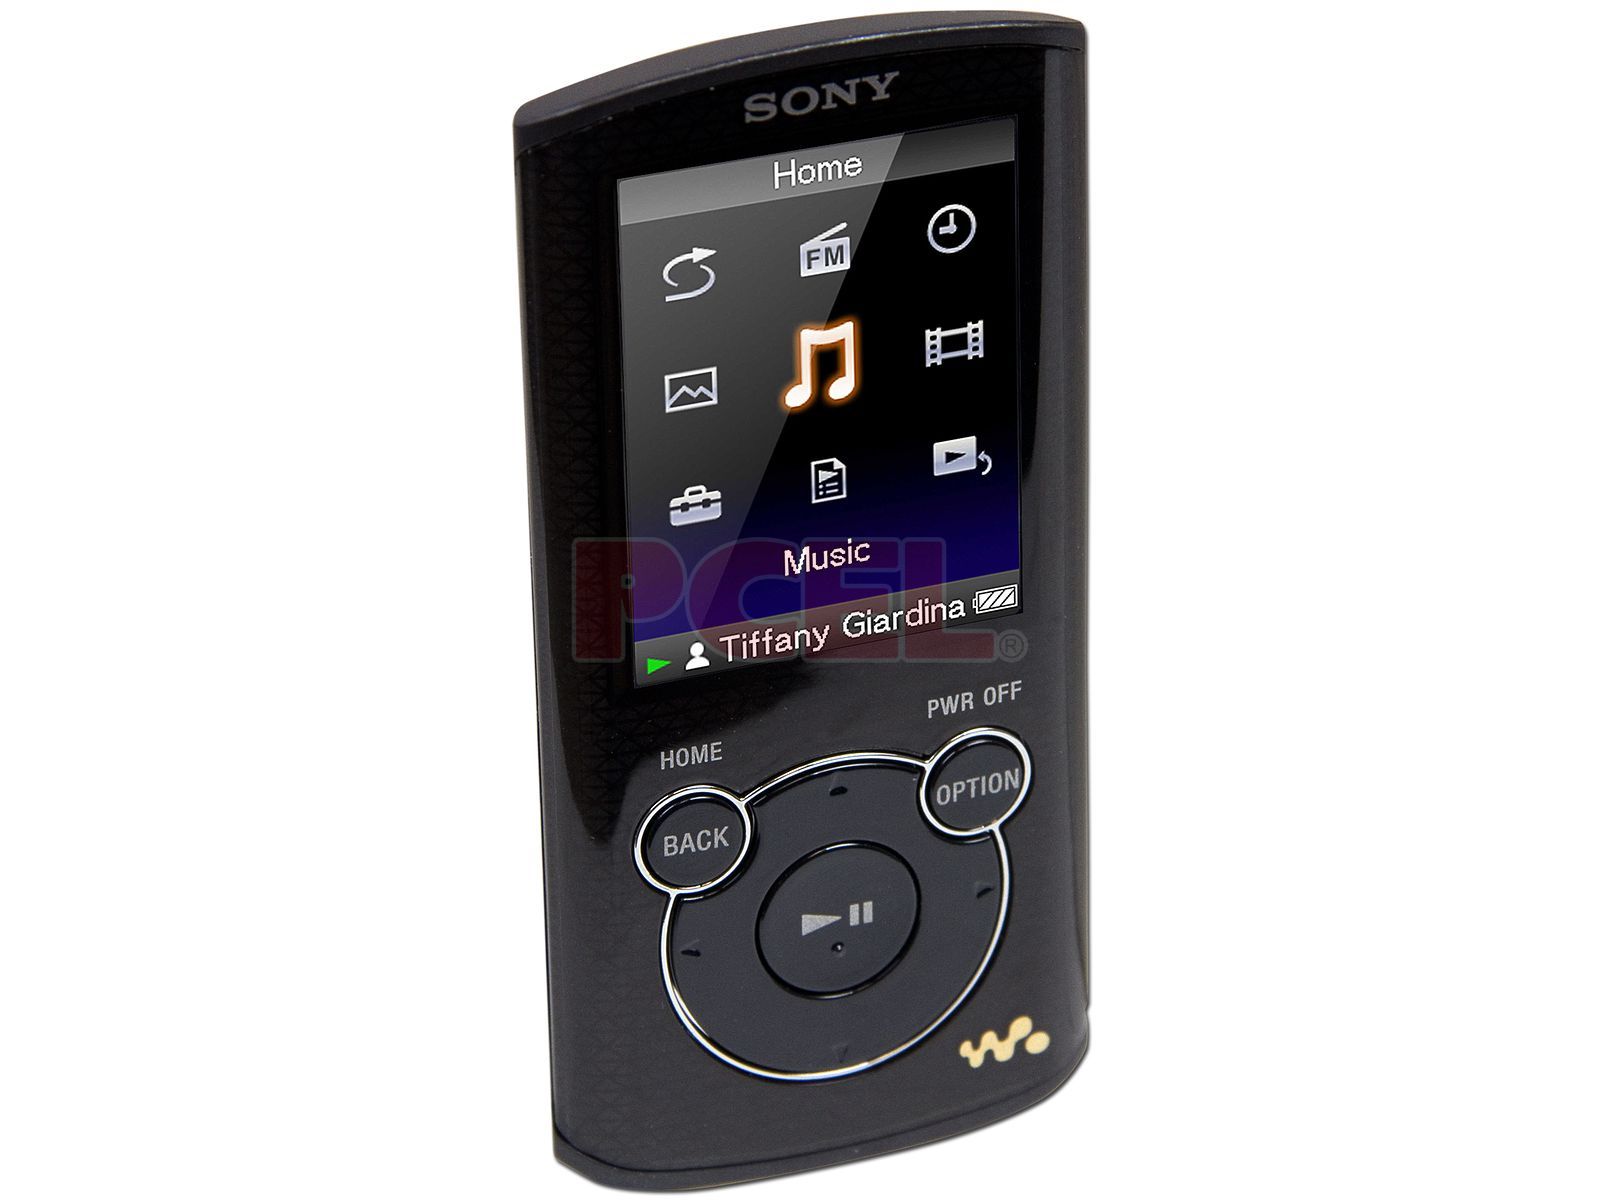 Reproductor Sony Walkman de Video y MP3 de 4GB. Color Negro